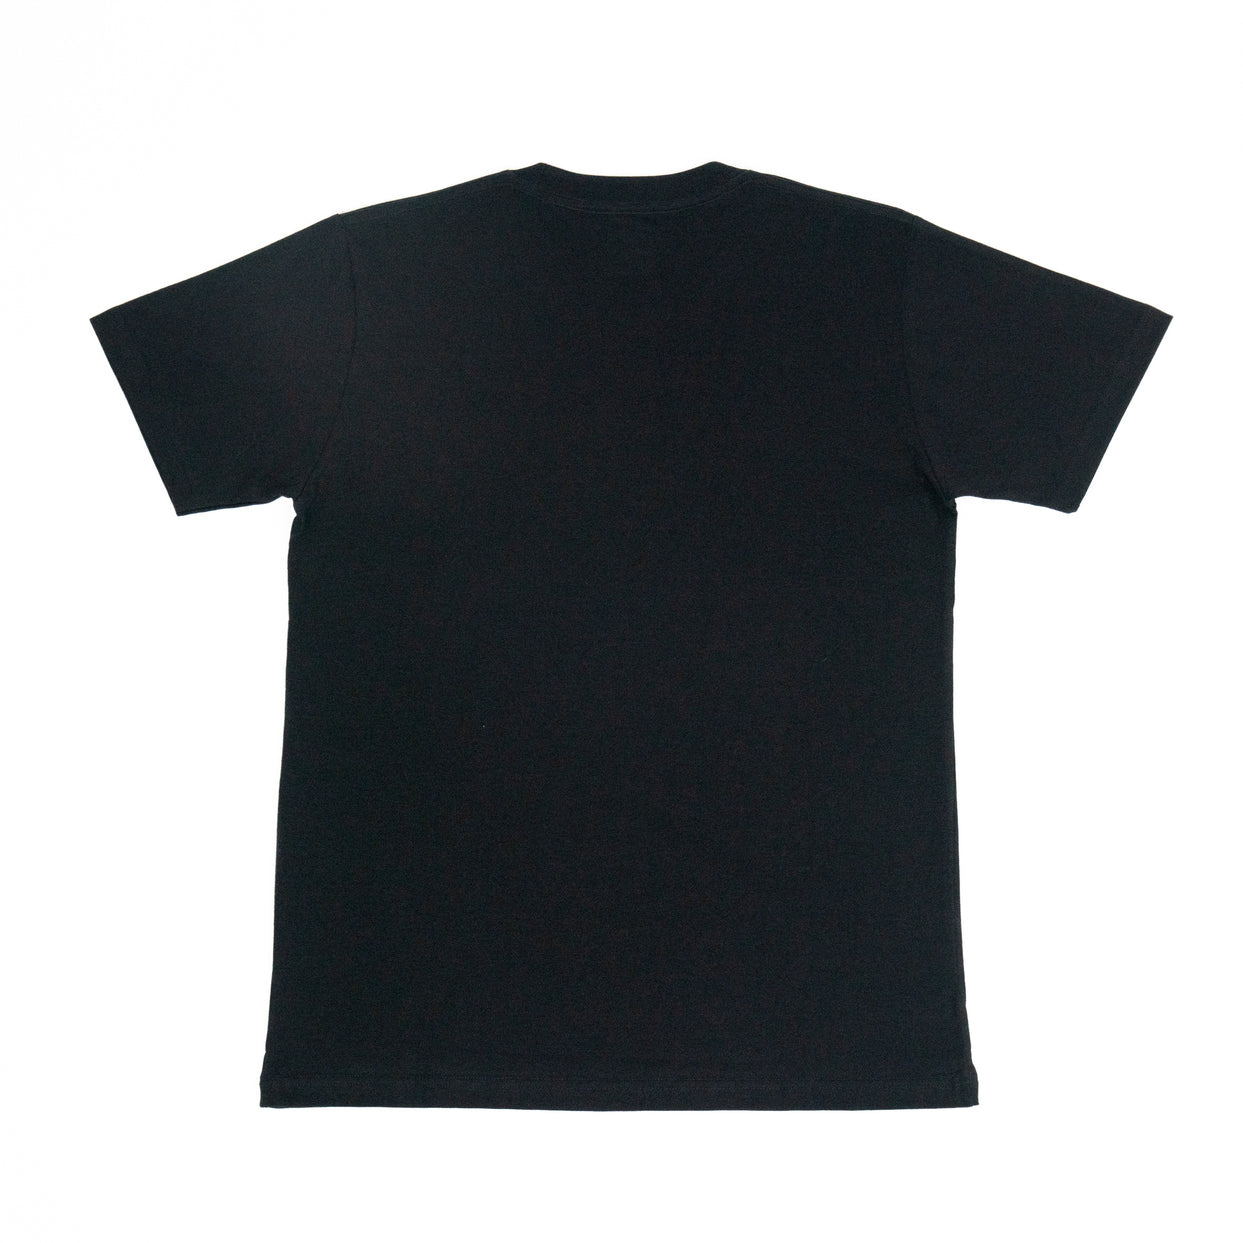 AZA T-Shirt Pro Basic Edition - Jet Black